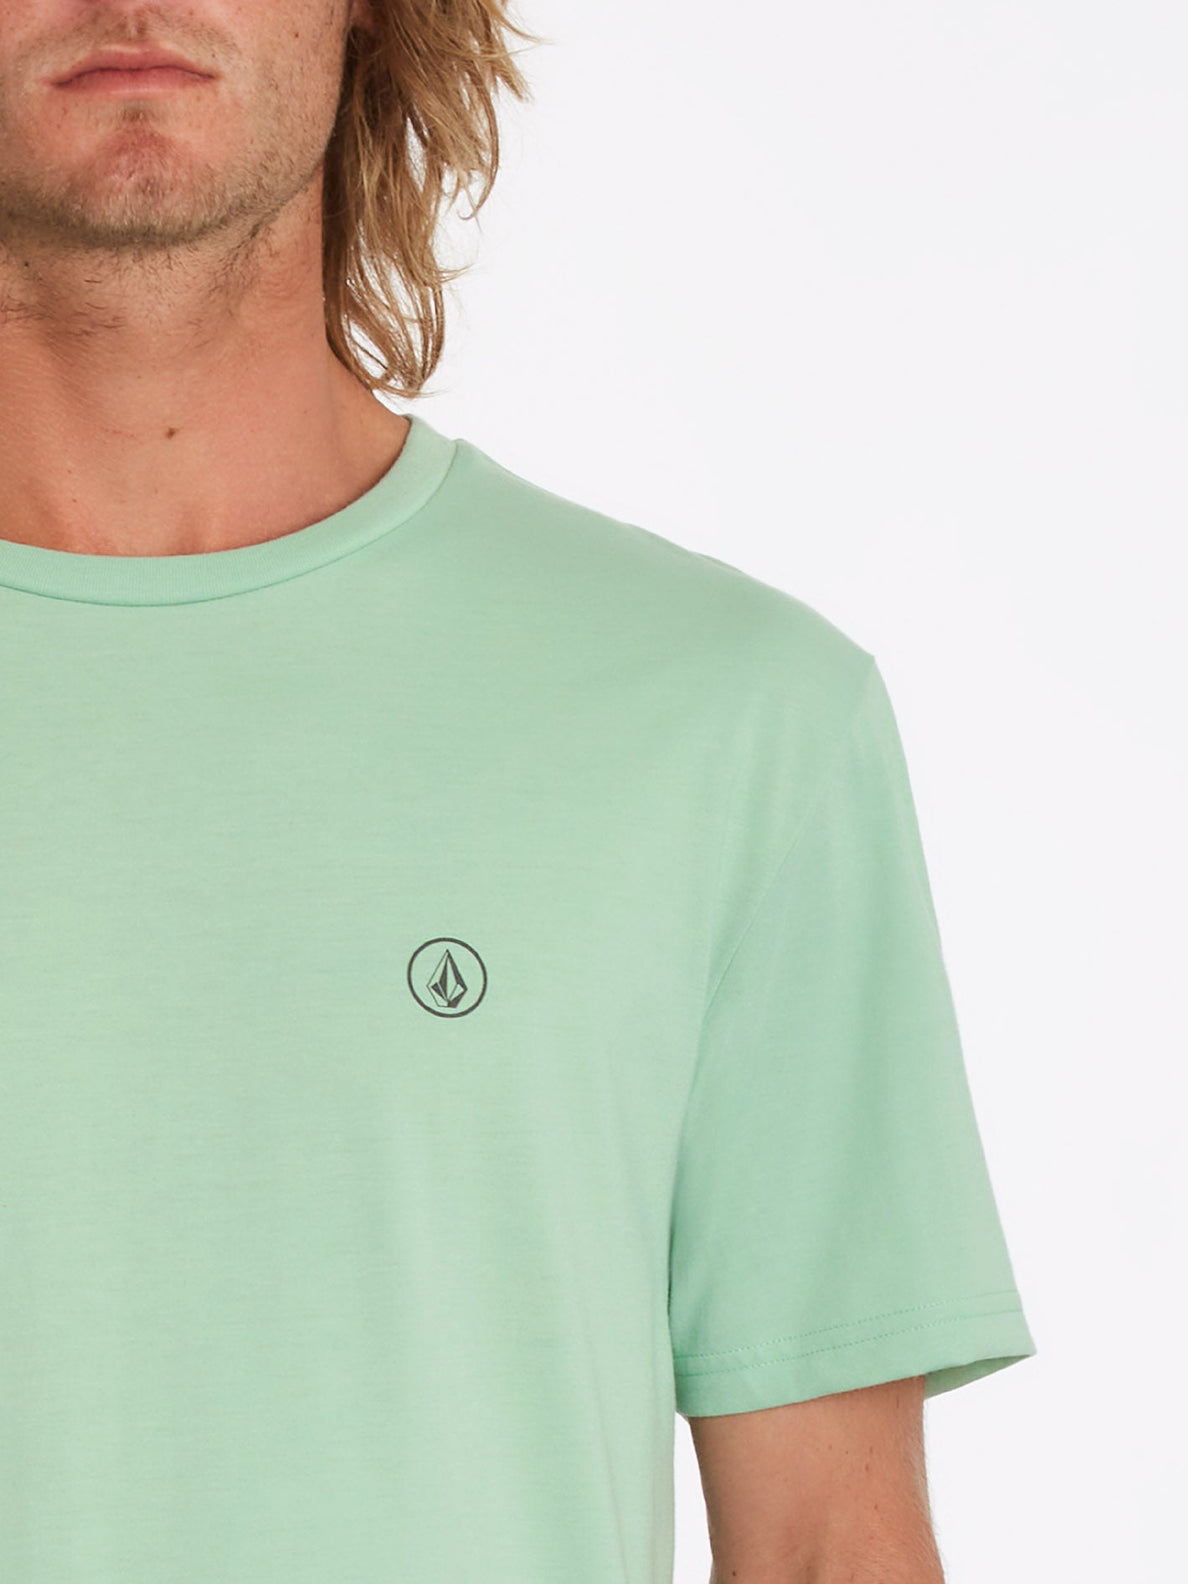 Circle Blanks T-shirt - LICHEN GREEN (A5712050_LCG) [2]